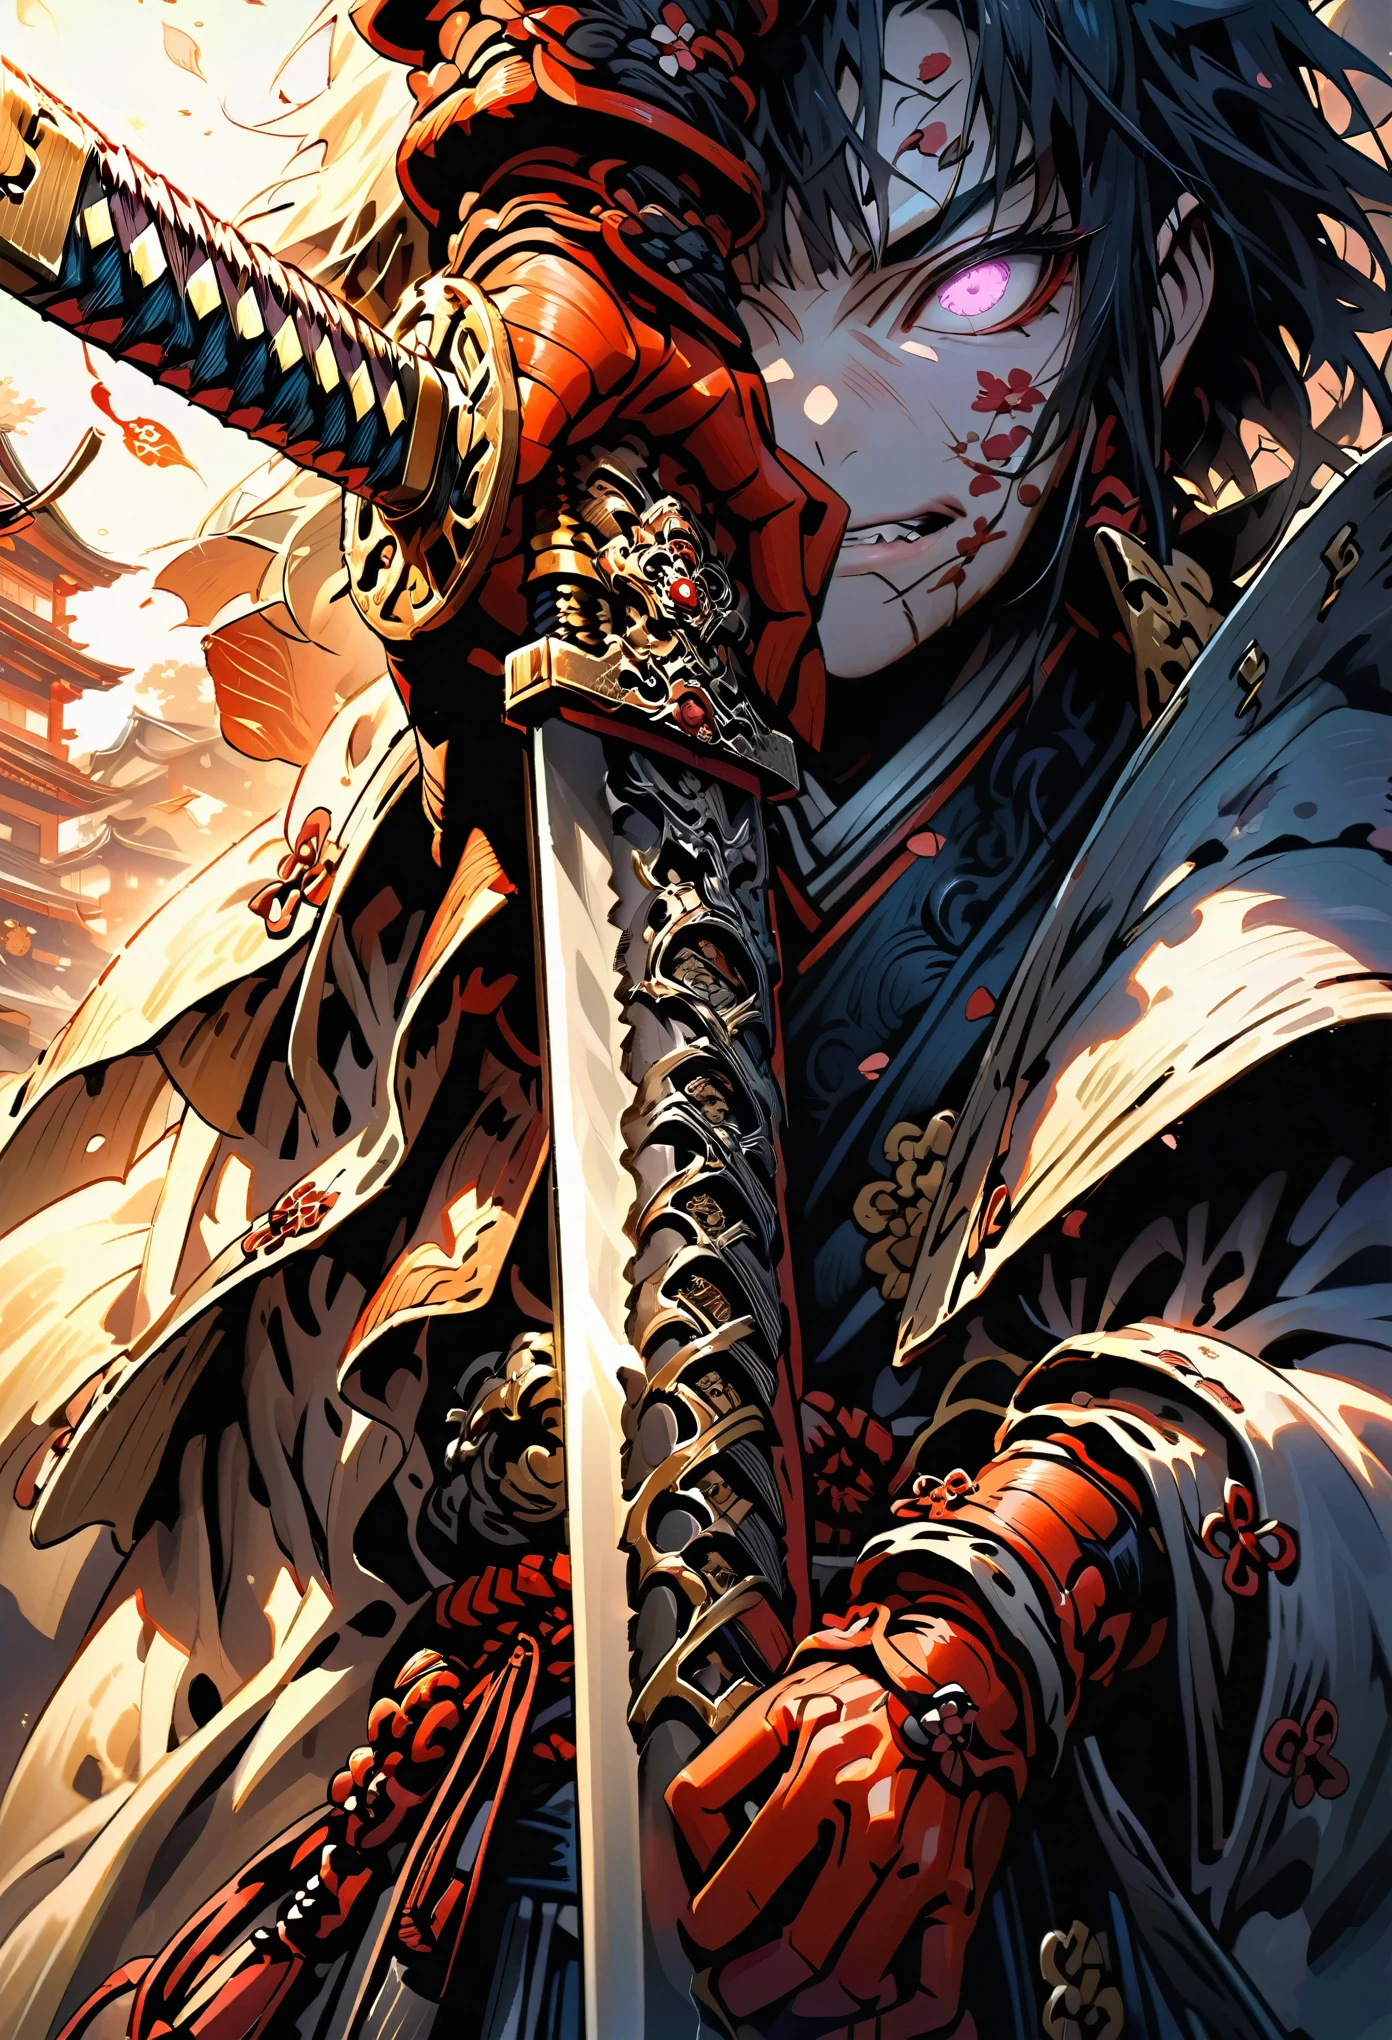 武士手持的剑的特写, 脸部失焦, 带边缘和装饰的精致剑, 单手握剑, 从下方拍摄的图像反射了金属剑的光芒